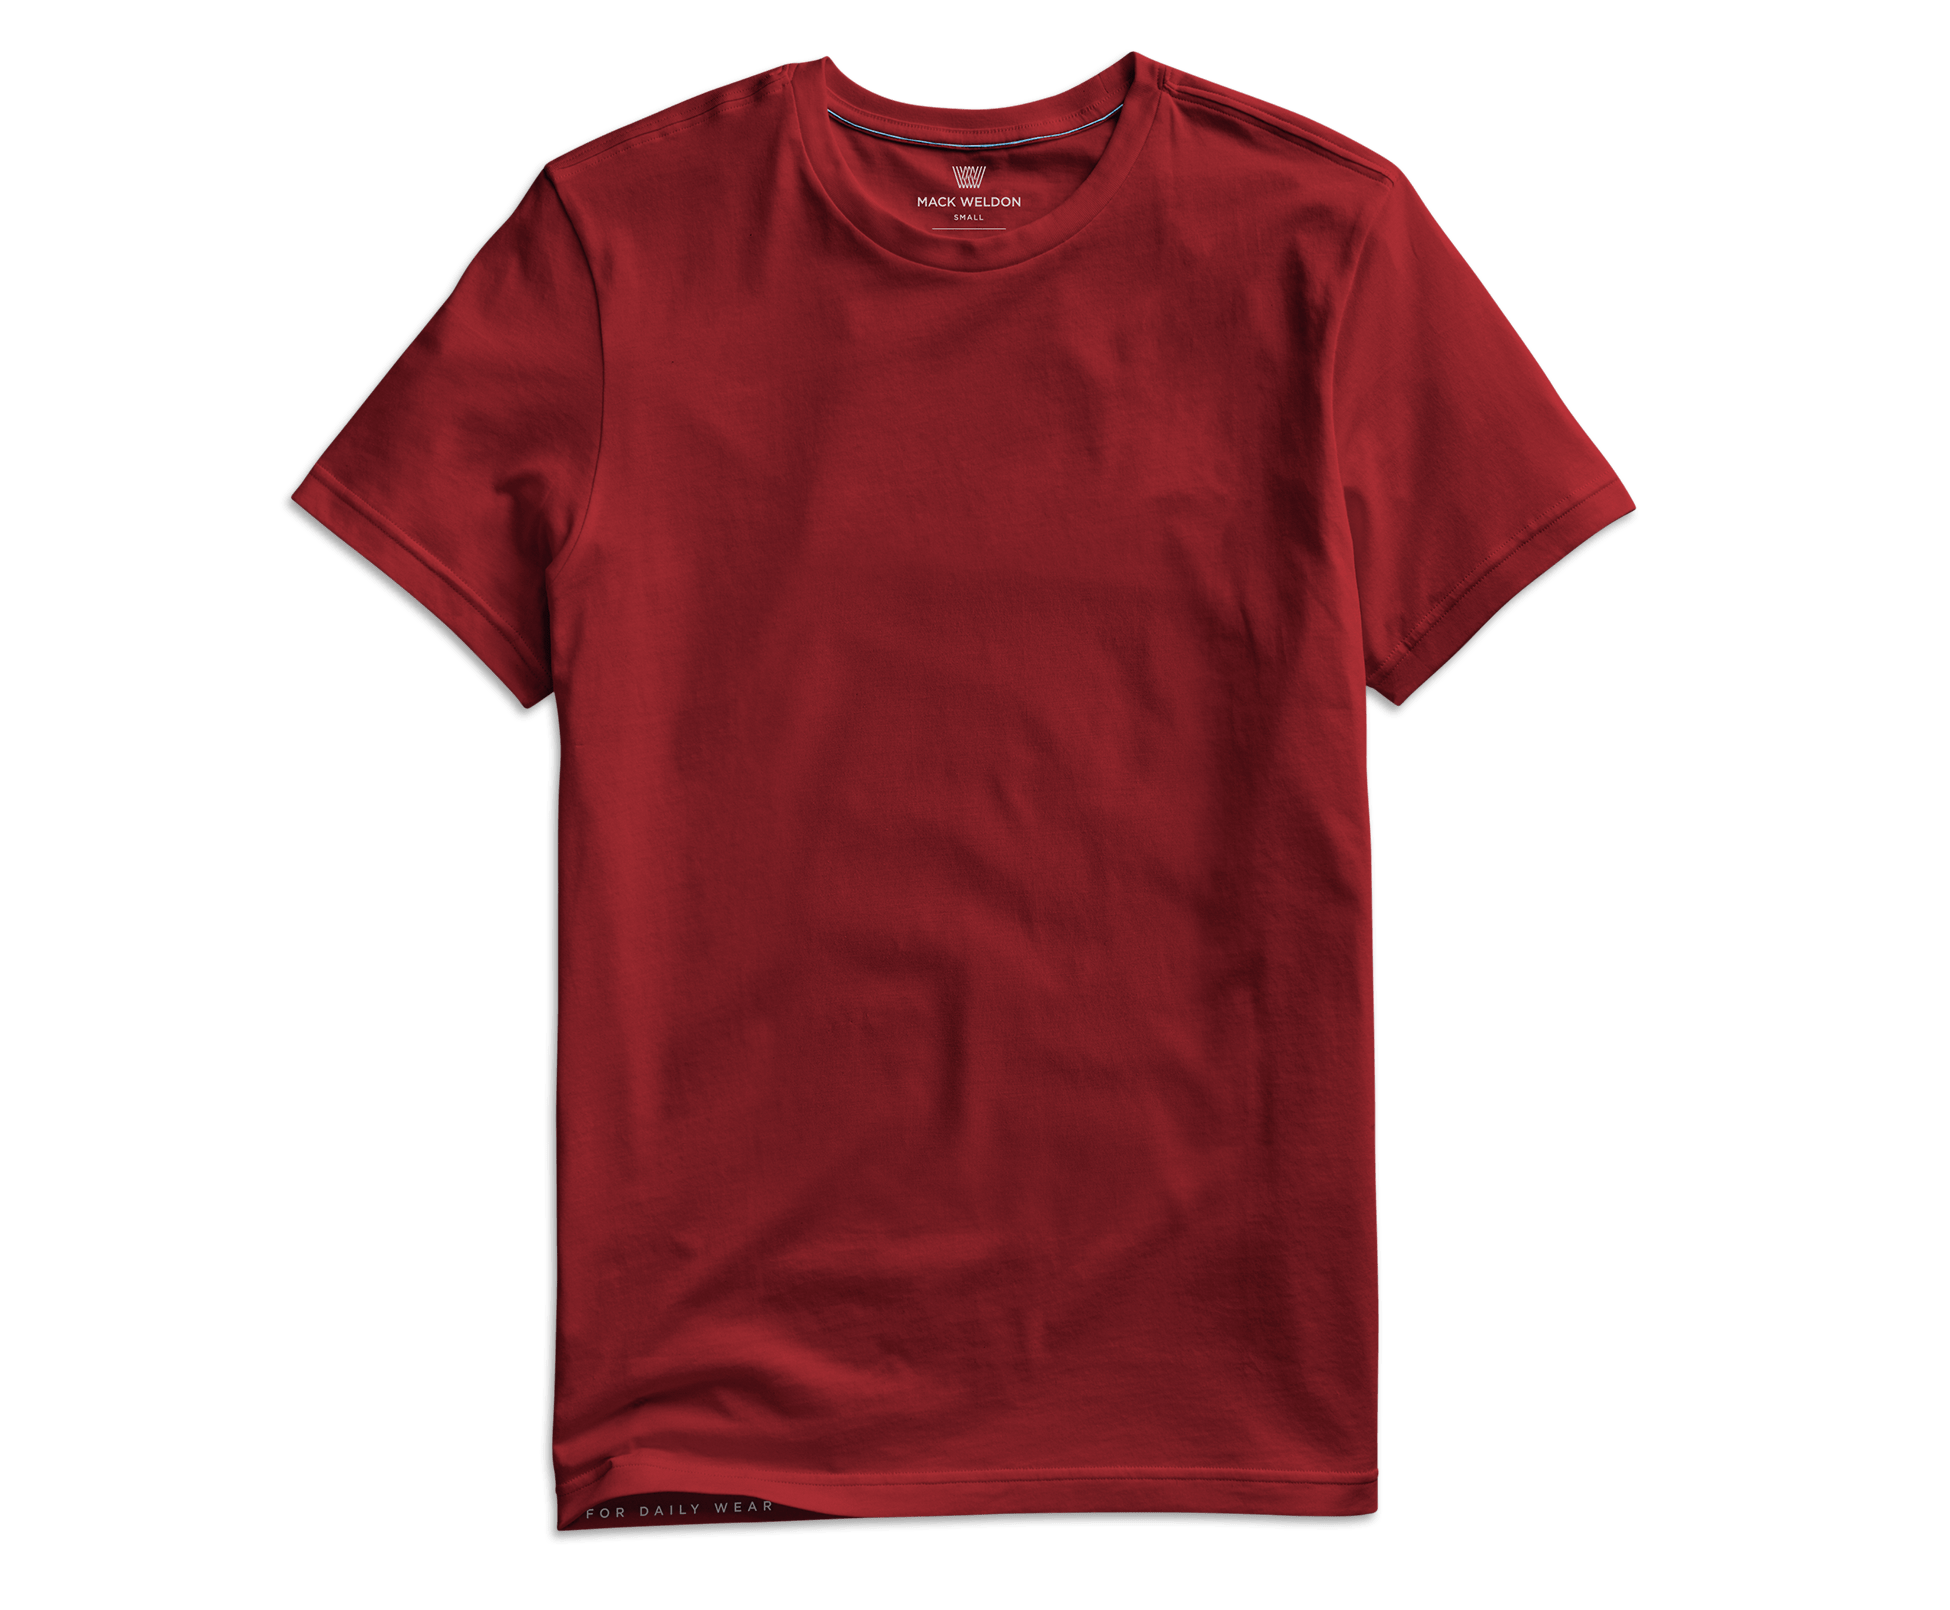 total crimson color shirts